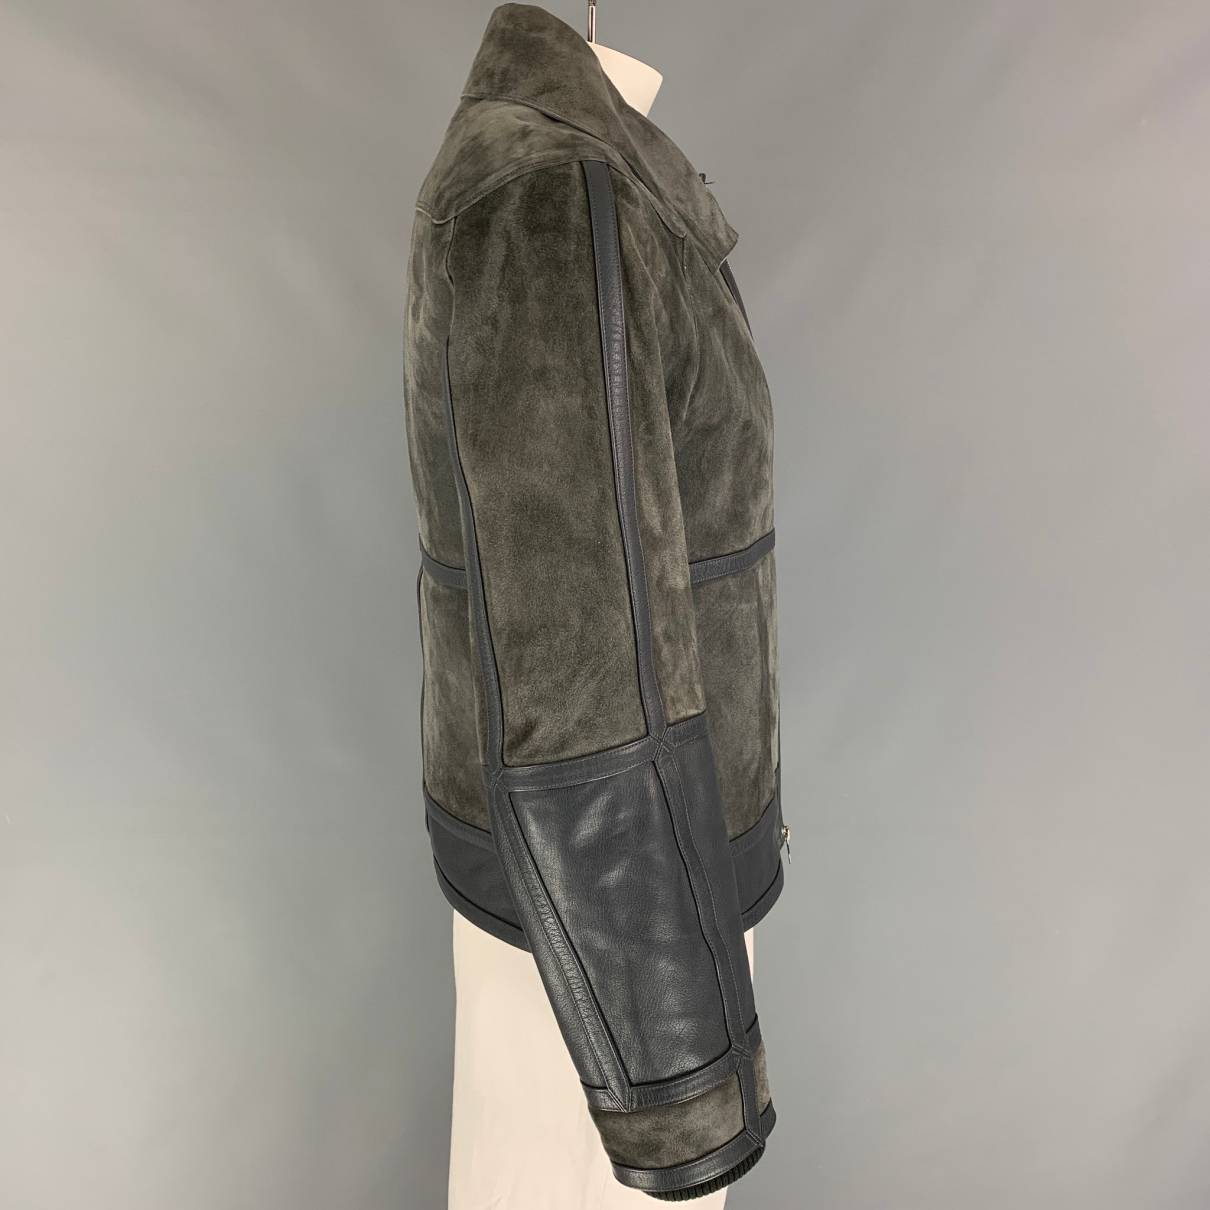 Louis Vuitton Men's Plain Leather Jacket